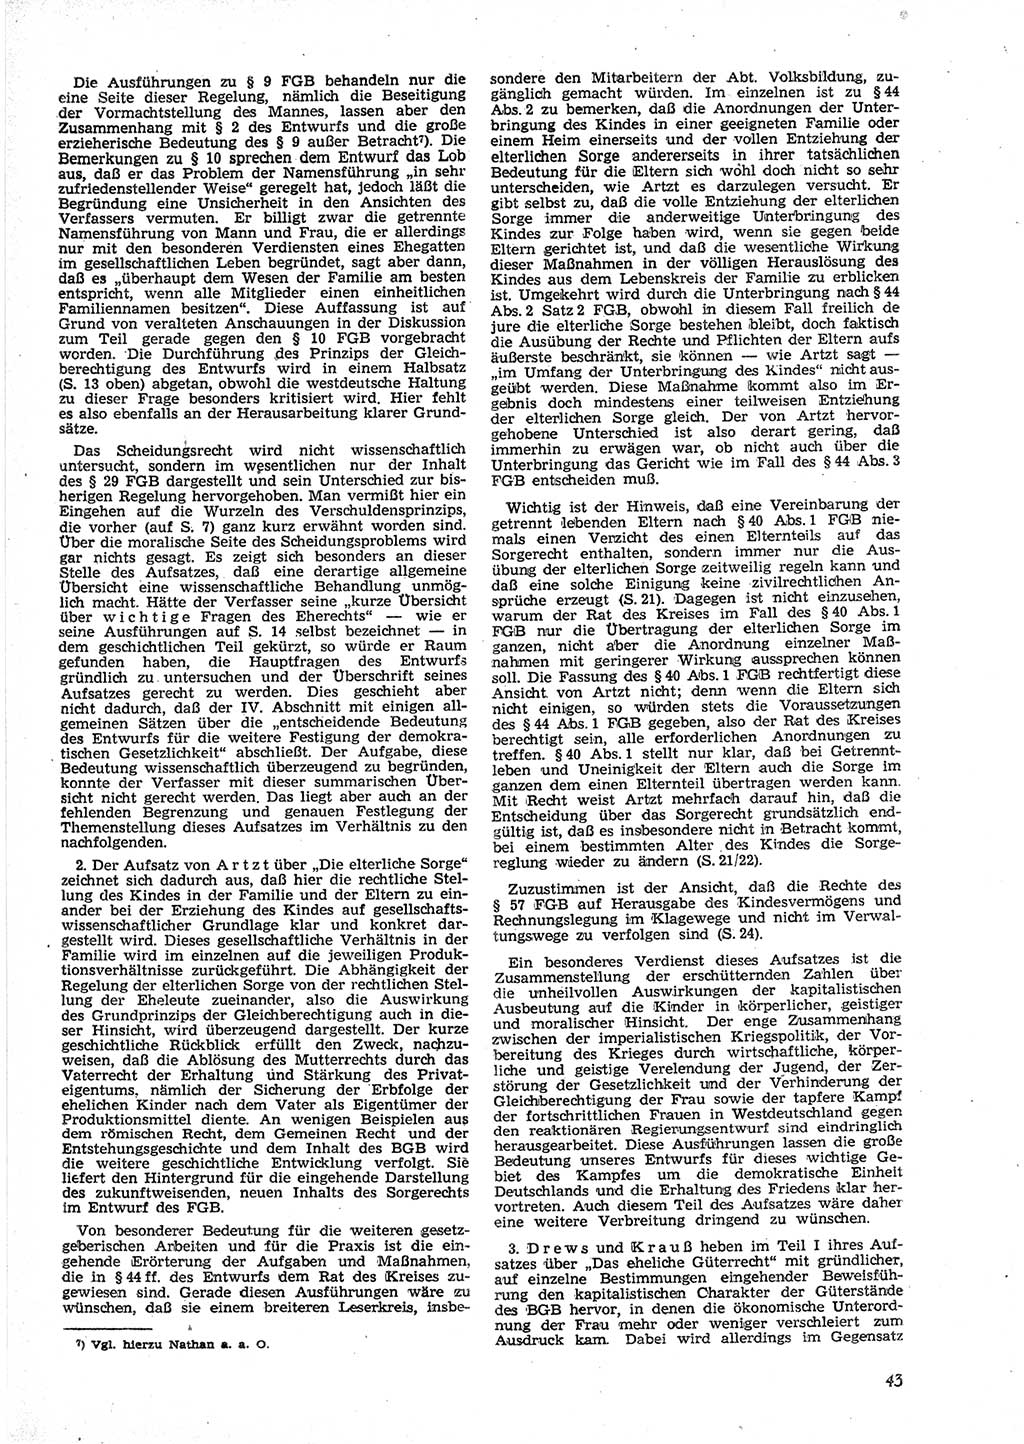 Neue Justiz (NJ), Zeitschrift für Recht und Rechtswissenschaft [Deutsche Demokratische Republik (DDR)], 9. Jahrgang 1955, Seite 43 (NJ DDR 1955, S. 43)